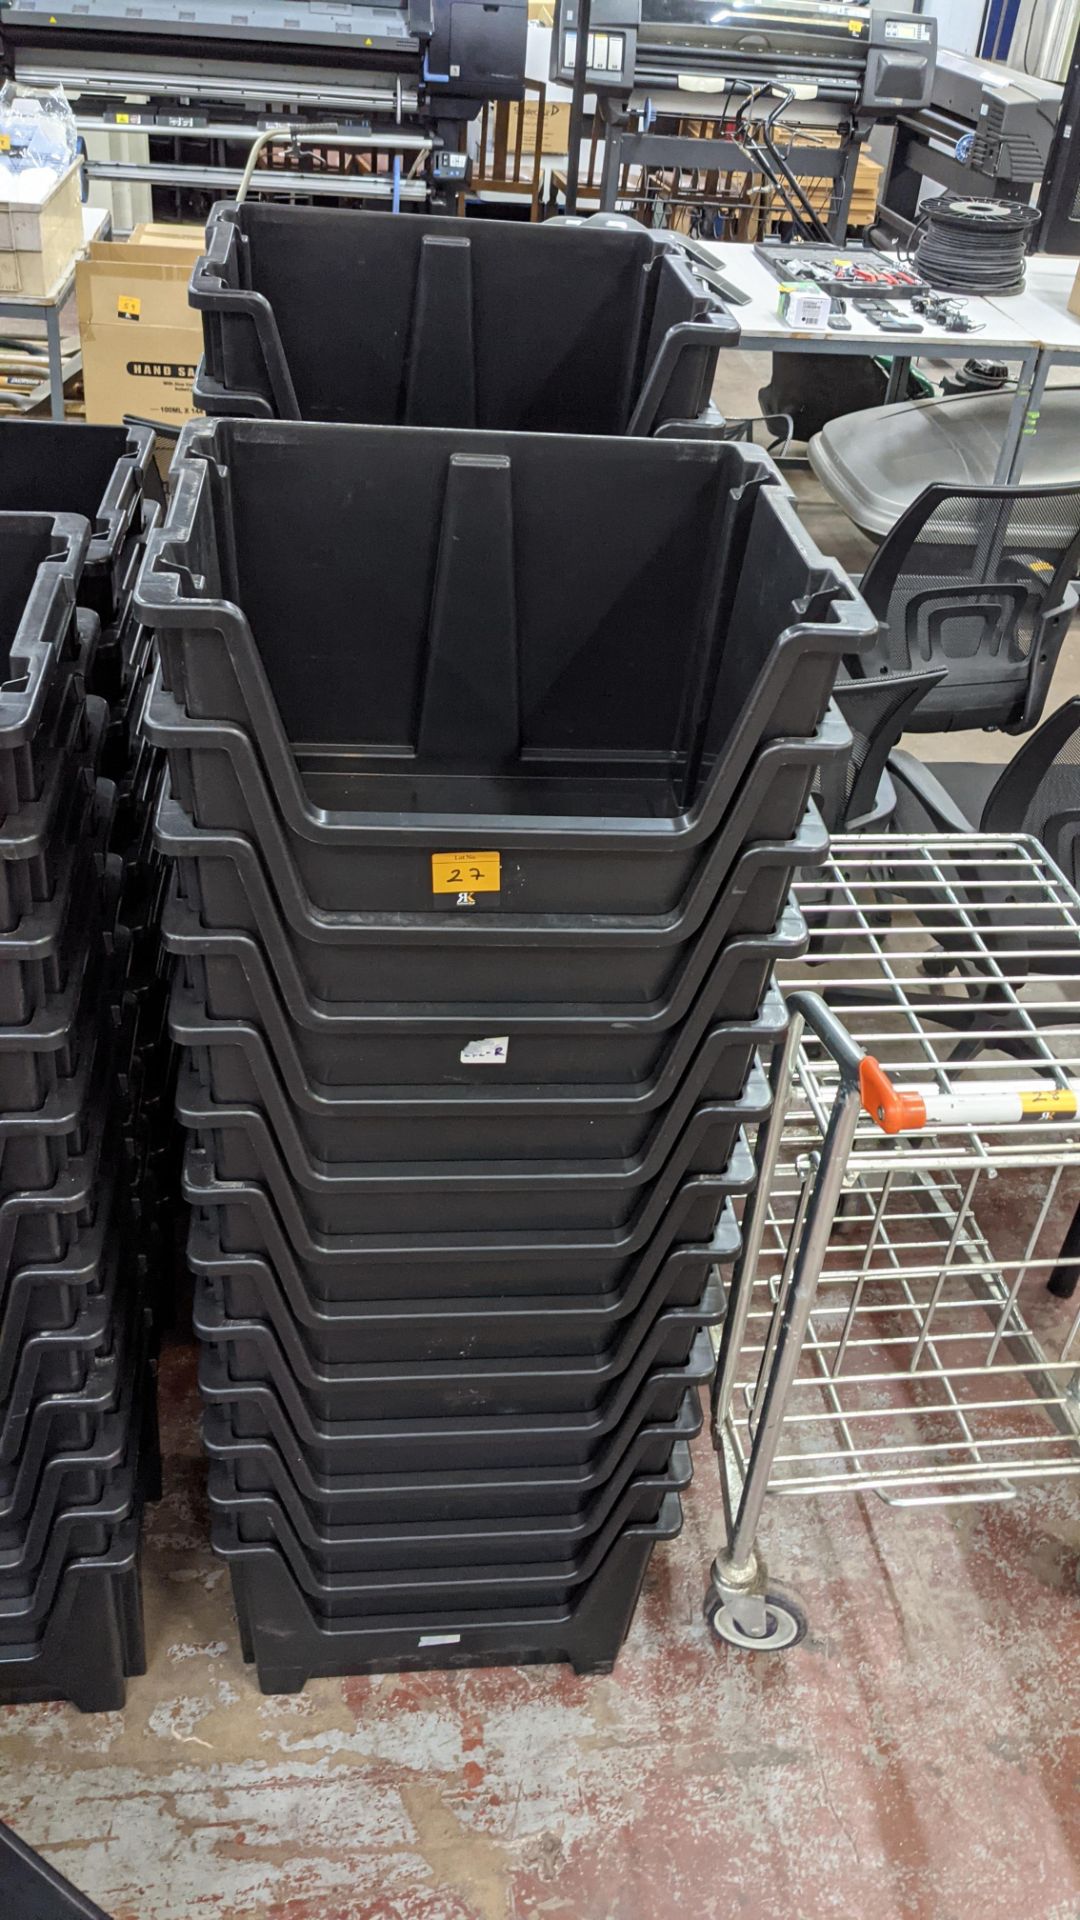 27 off large stacking picking bins - Image 2 of 4